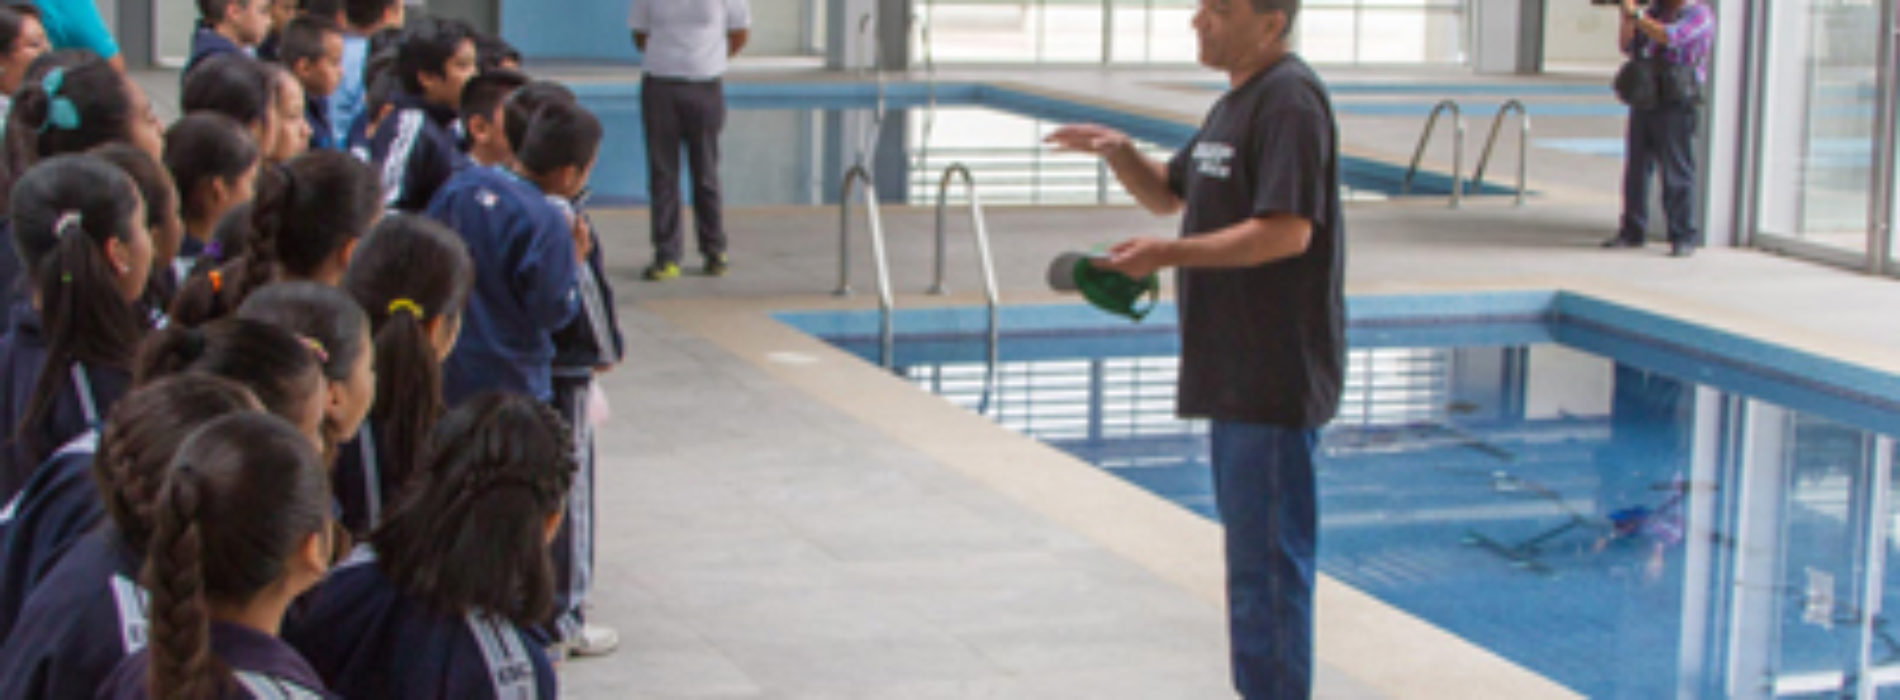 Deporte, diversión y aprendizaje en el Centro de Recreación y Acondicionamiento Deportivo “Venustiano Carranza”